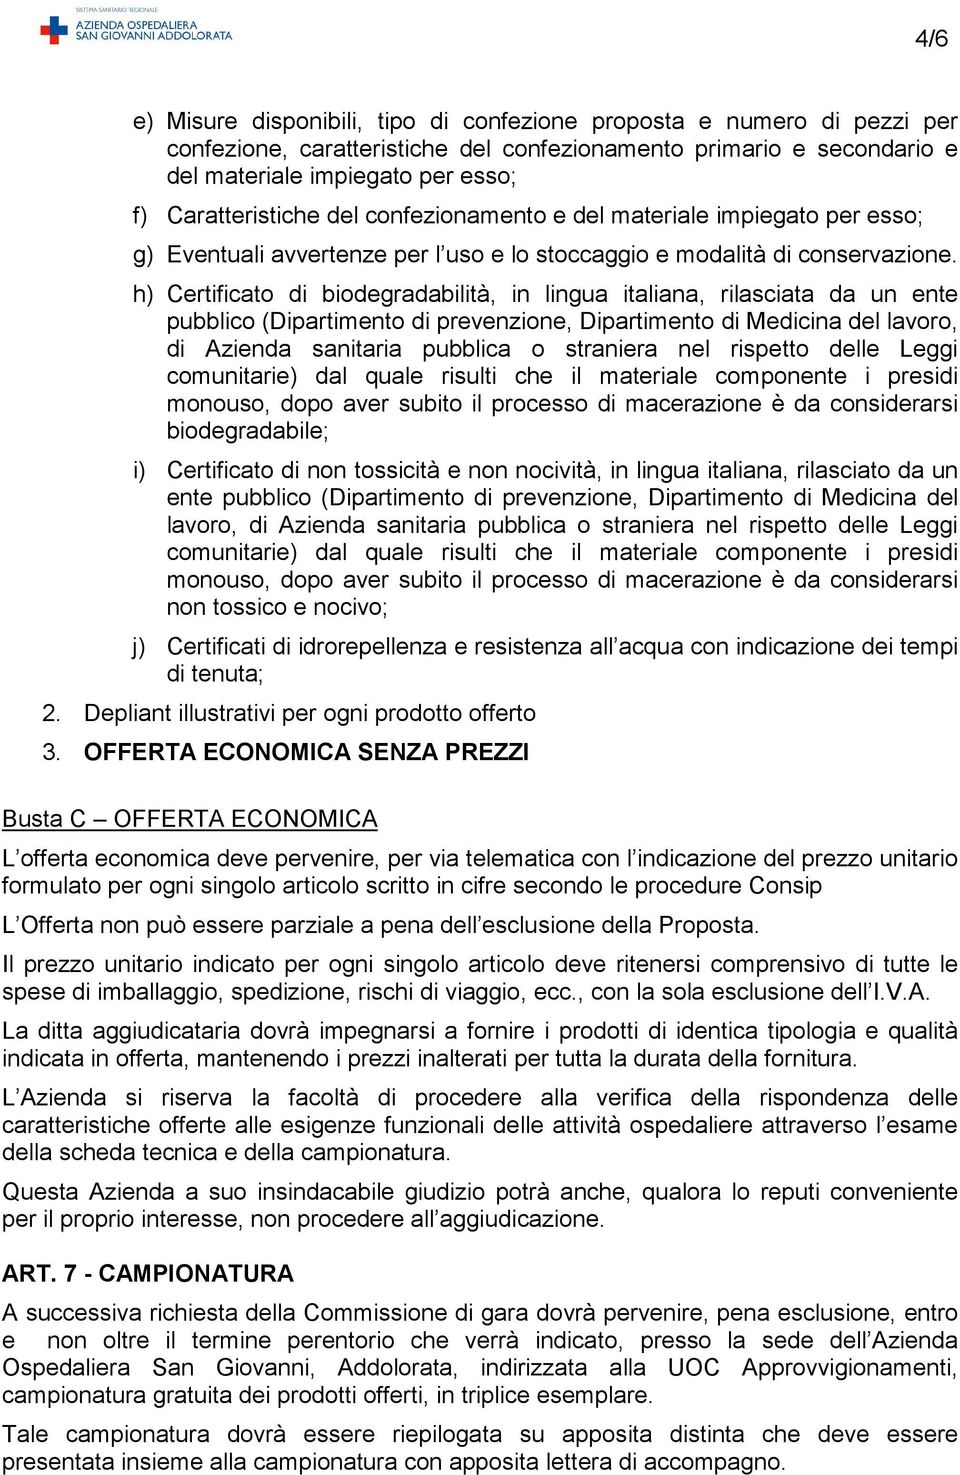 h) Certificato di biodegradabilità, in lingua italiana, rilasciata da un ente pubblico (Dipartimento di prevenzione, Dipartimento di Medicina del lavoro, di Azienda sanitaria pubblica o straniera nel